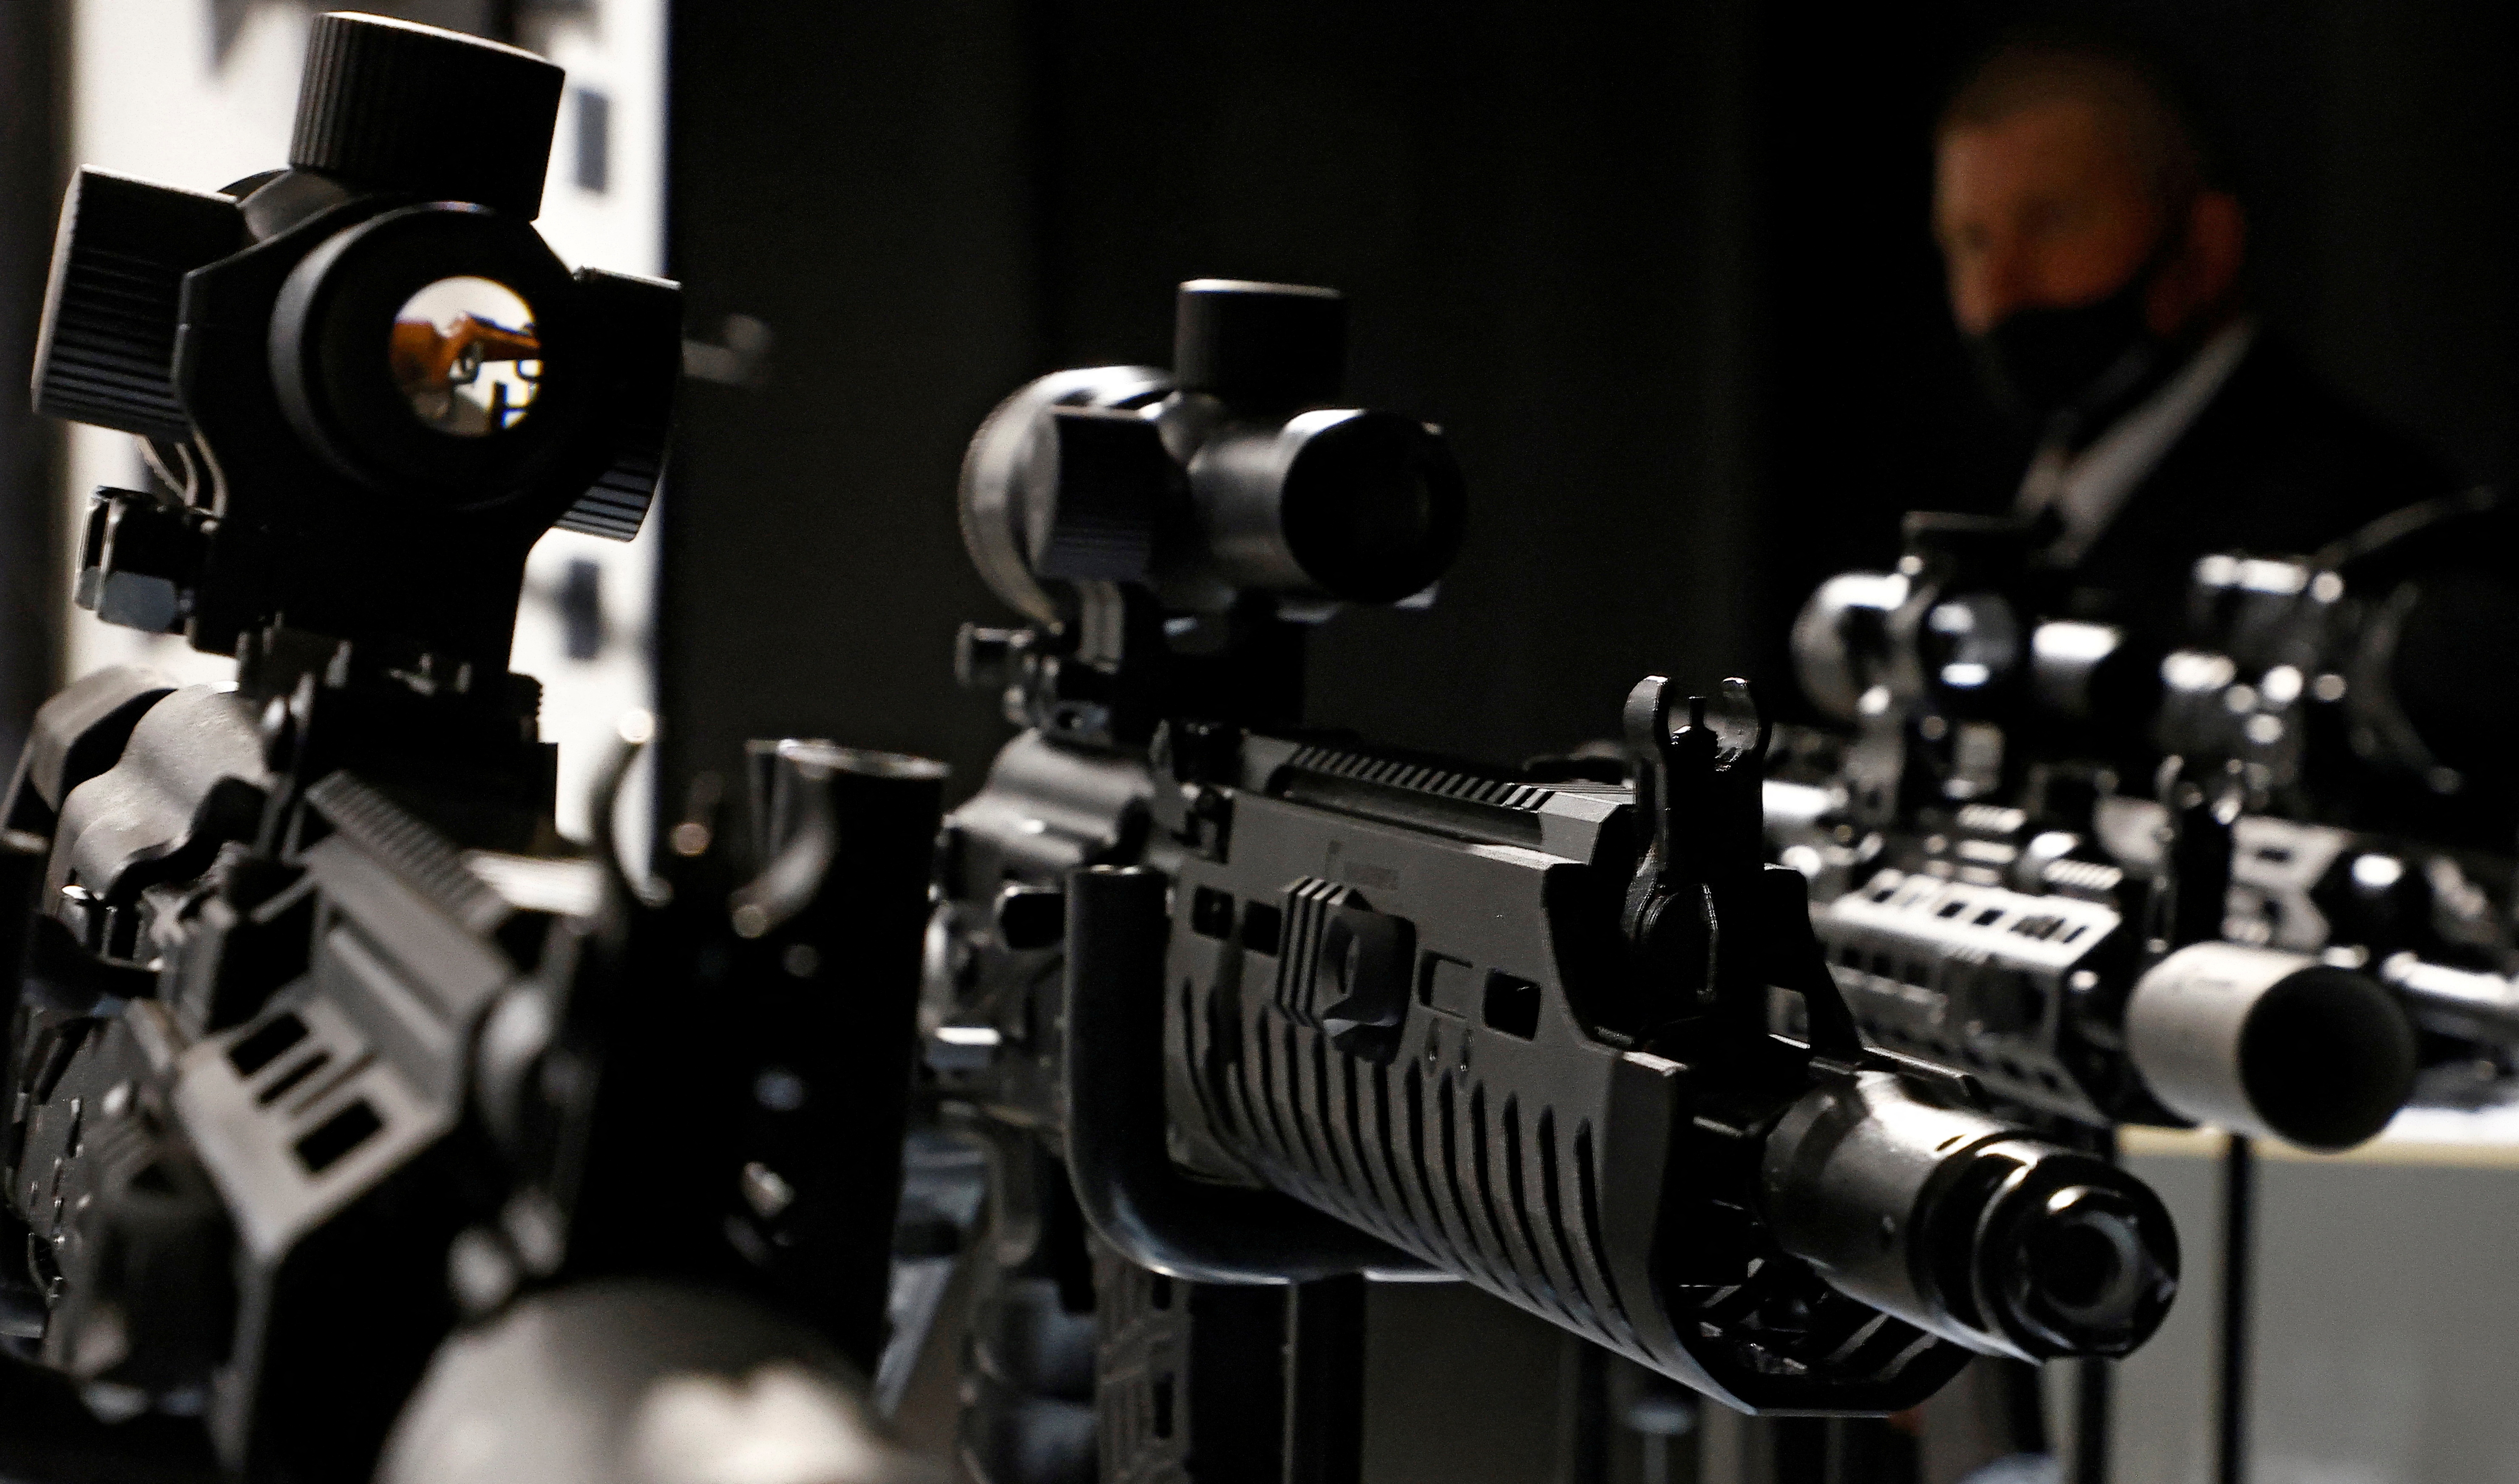 FOTO DE ARCHIVO: Fusiles en el stand del Grupo Kalashnikov durante el foro técnico-militar internacional "Army-2021" en el Centro de Congresos y Exposiciones Patriot en la región de Moscú, Rusia el 23 de agosto de 2021. REUTERS/Maxim Shemetov